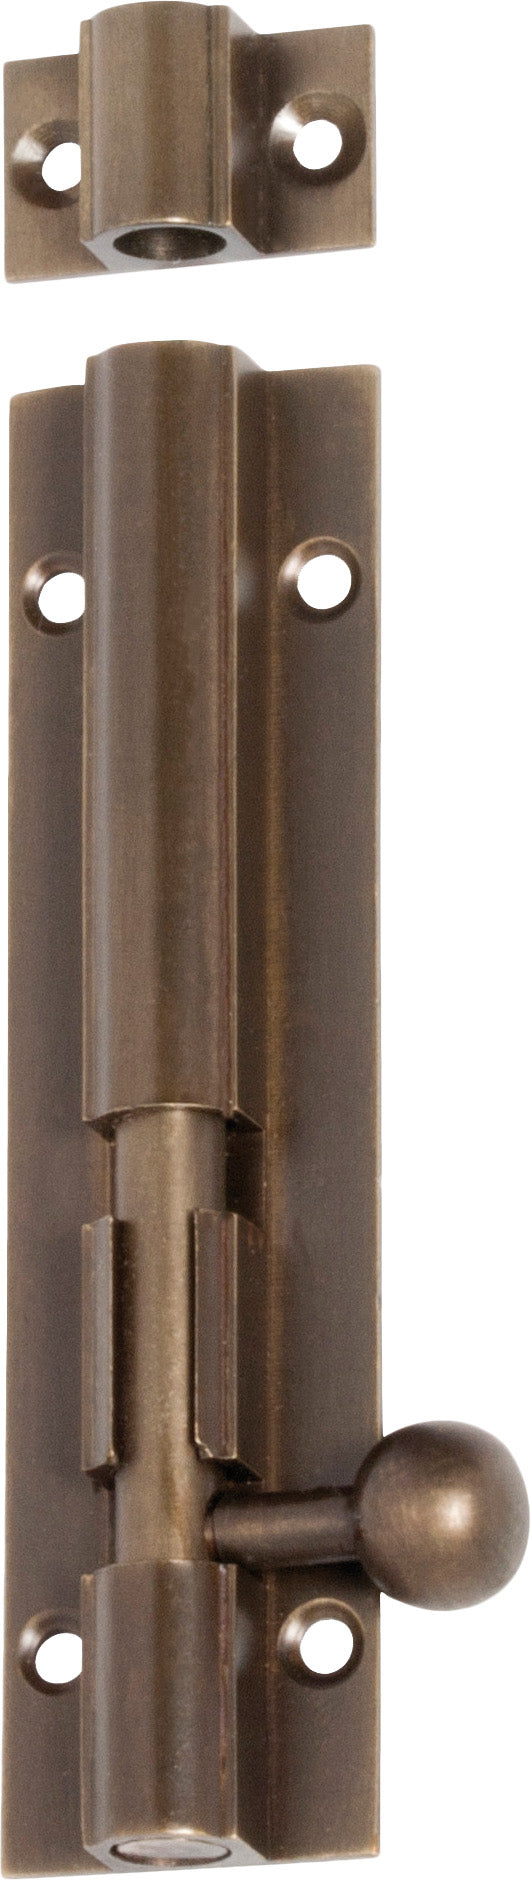 Barrel Bolt Antique Brass L100xW25mm Bolt 7.5mm